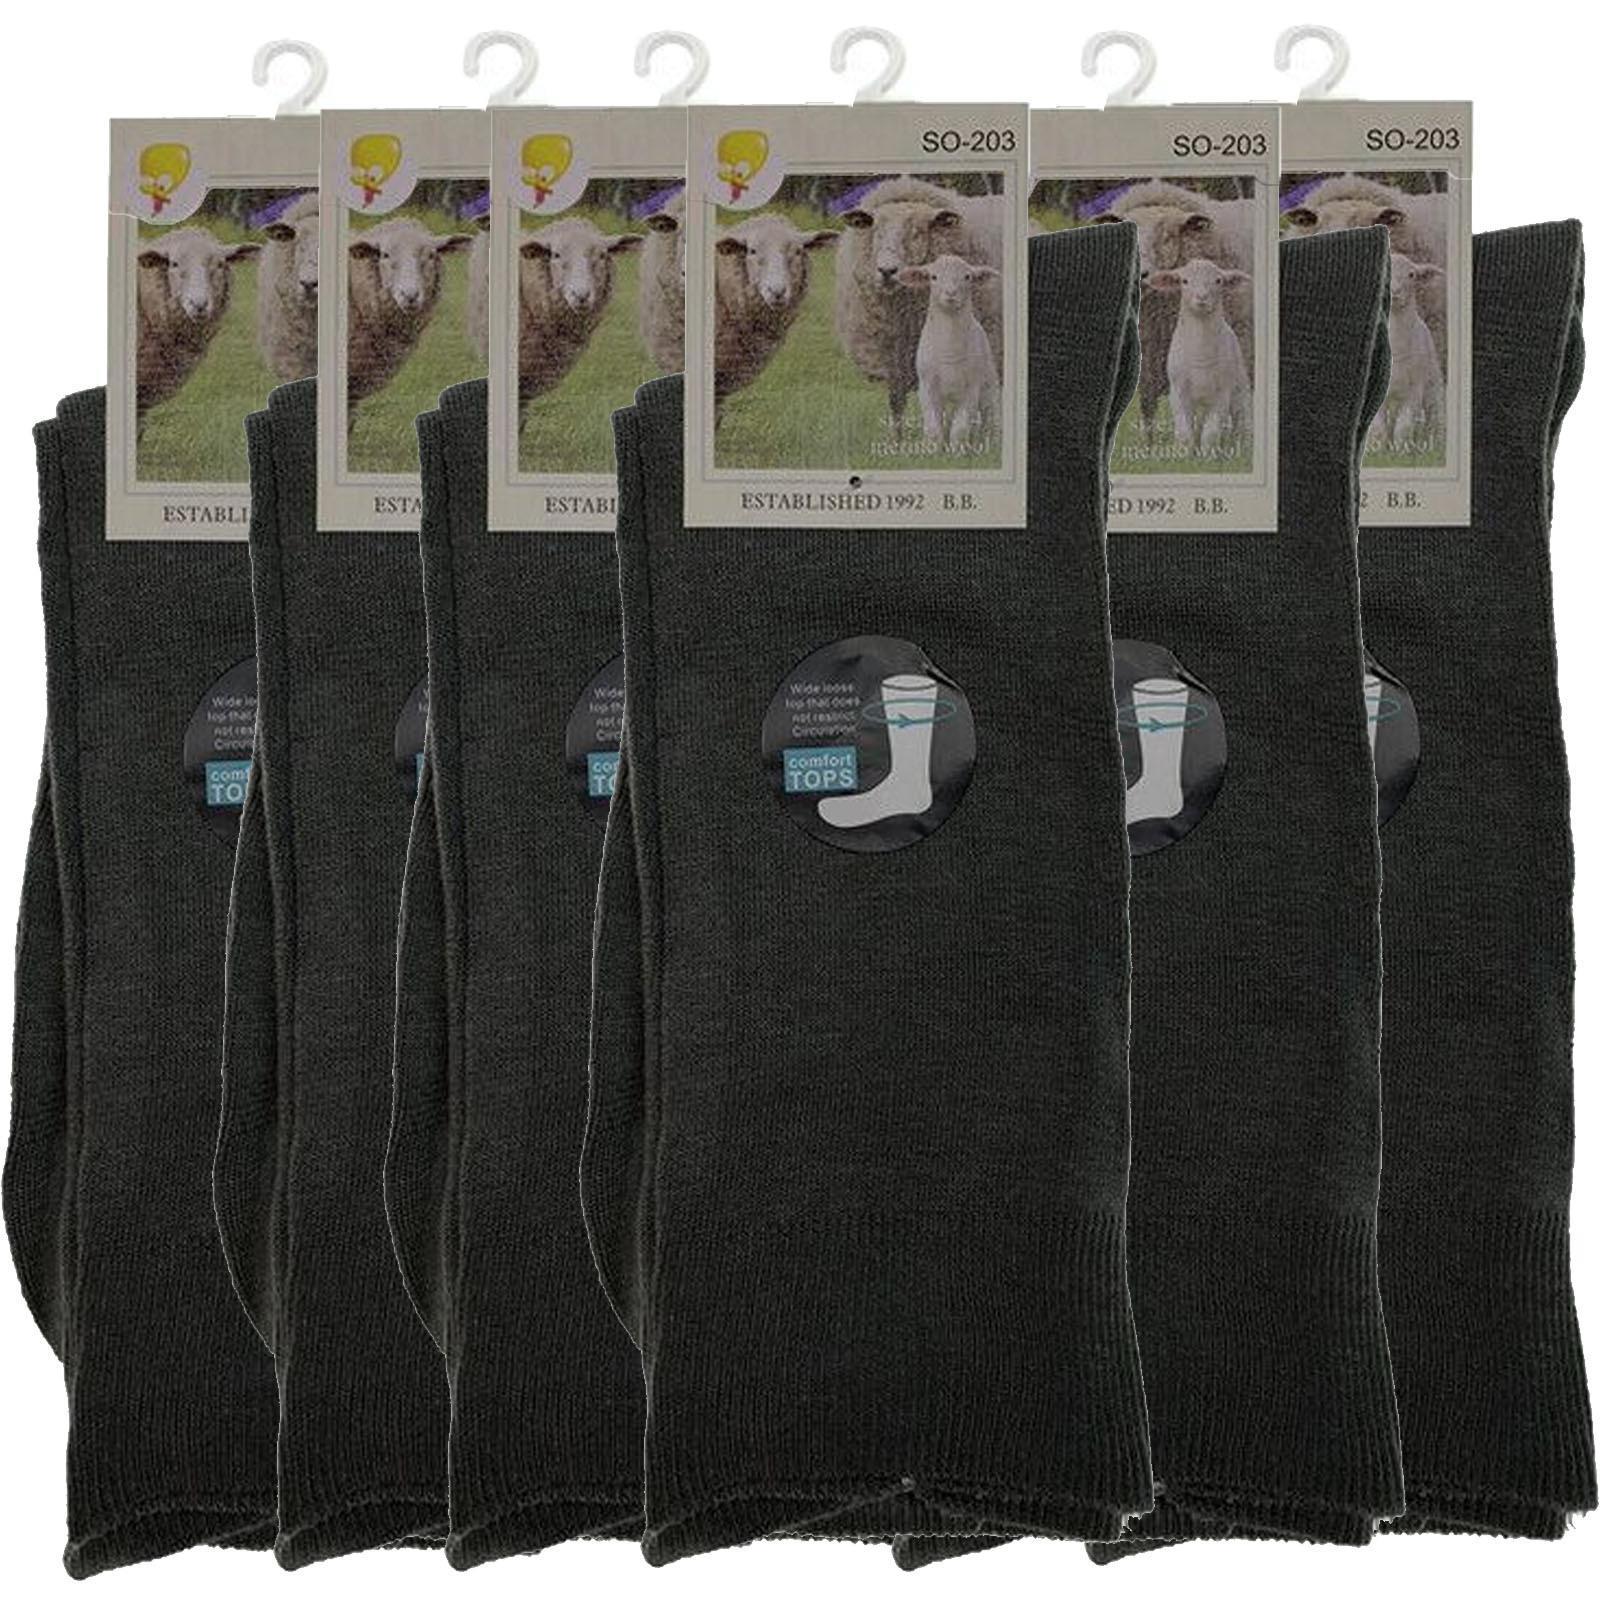 Merino Wool Mens Loose Top Thermal Socks Diabetic Comfort Circulation - 6 Pairs - Grey - 7-11